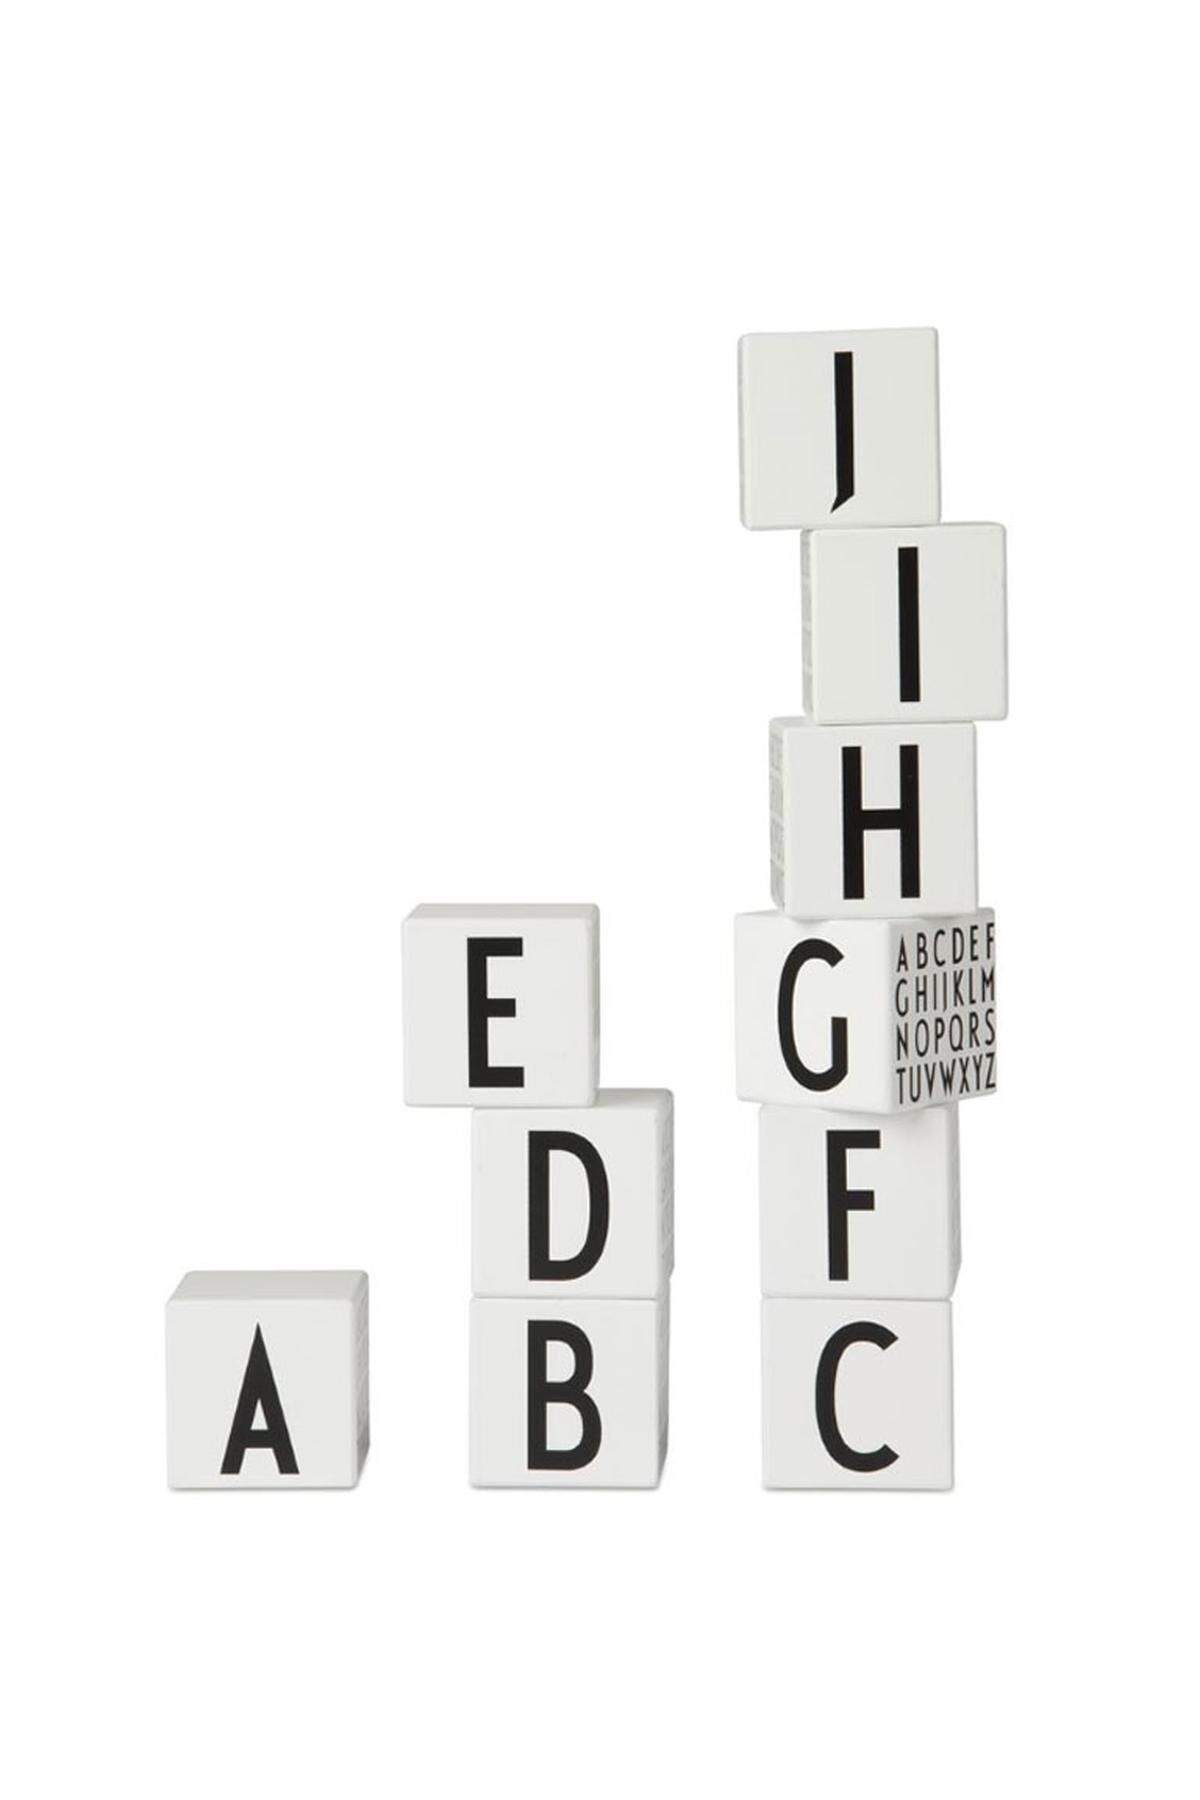 Früherziehung mit Stil. Die Bauklötze der dänischen Marke Design Letters zeigen alle Buchstaben des Alphabets in der Arne Jacobsen Typographie.